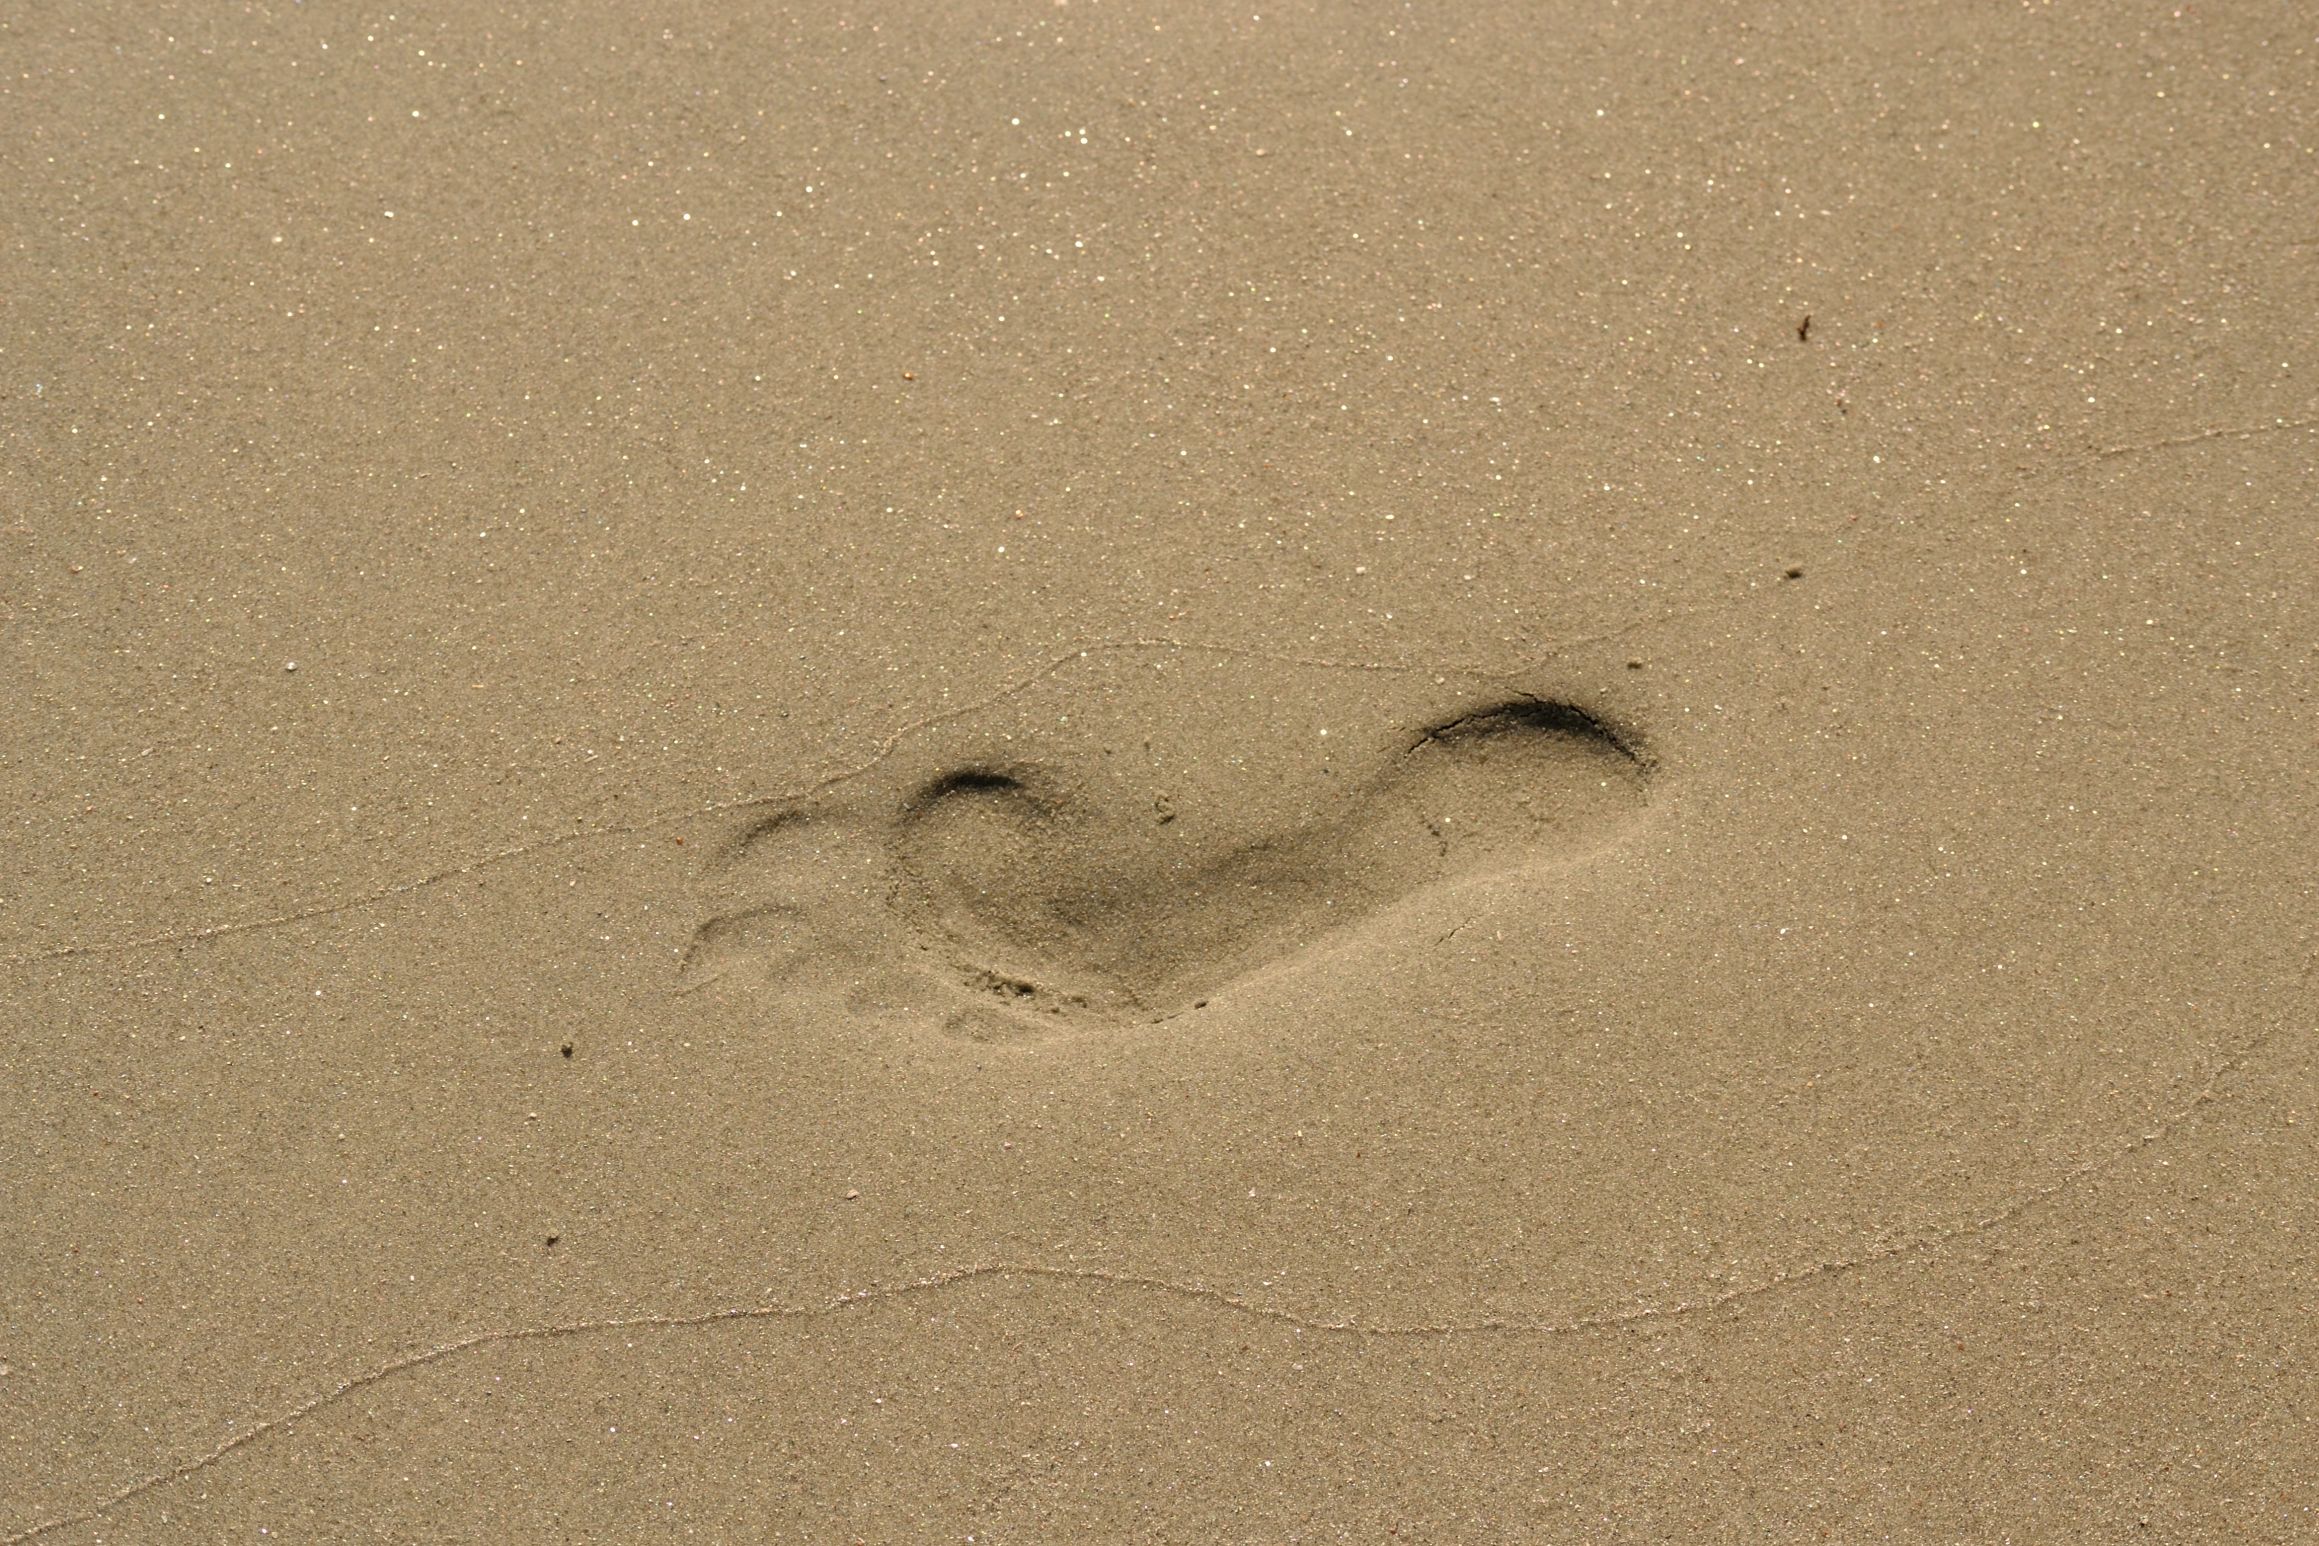 Footprint in sand Blank Meme Template